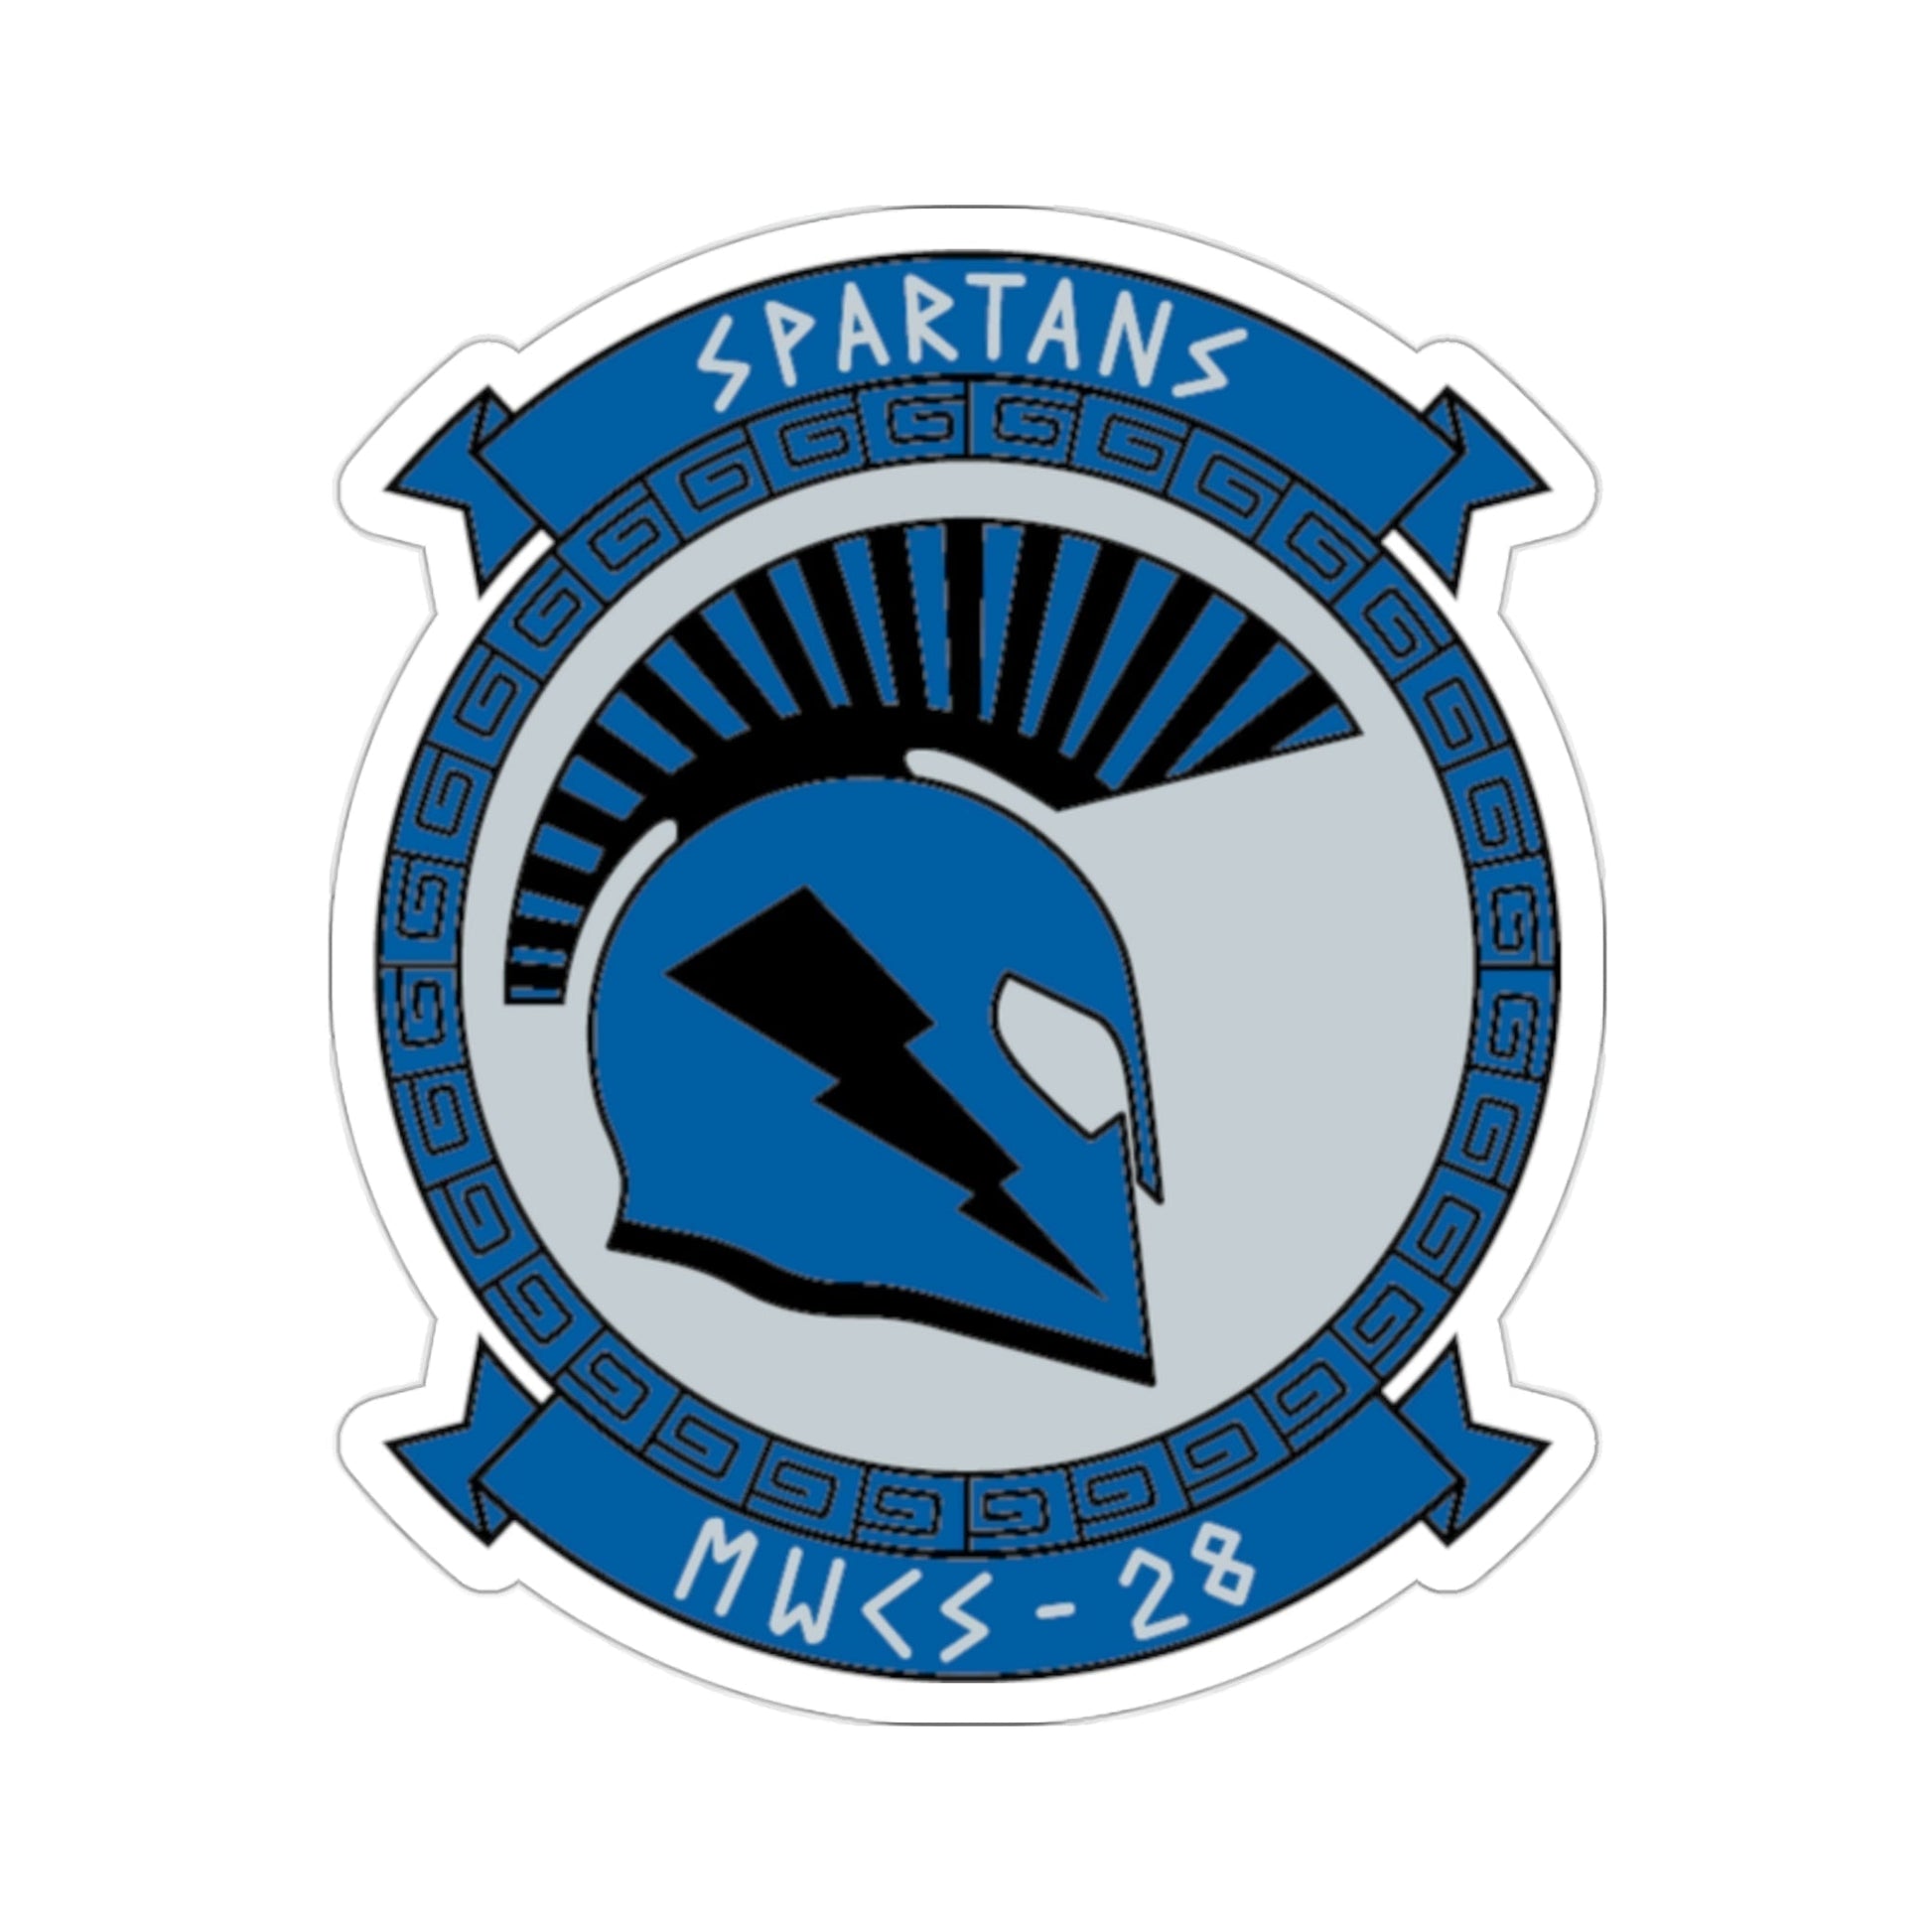 MWCS 28 Spartans (USMC) STICKER Vinyl Die-Cut Decal-2 Inch-The Sticker Space